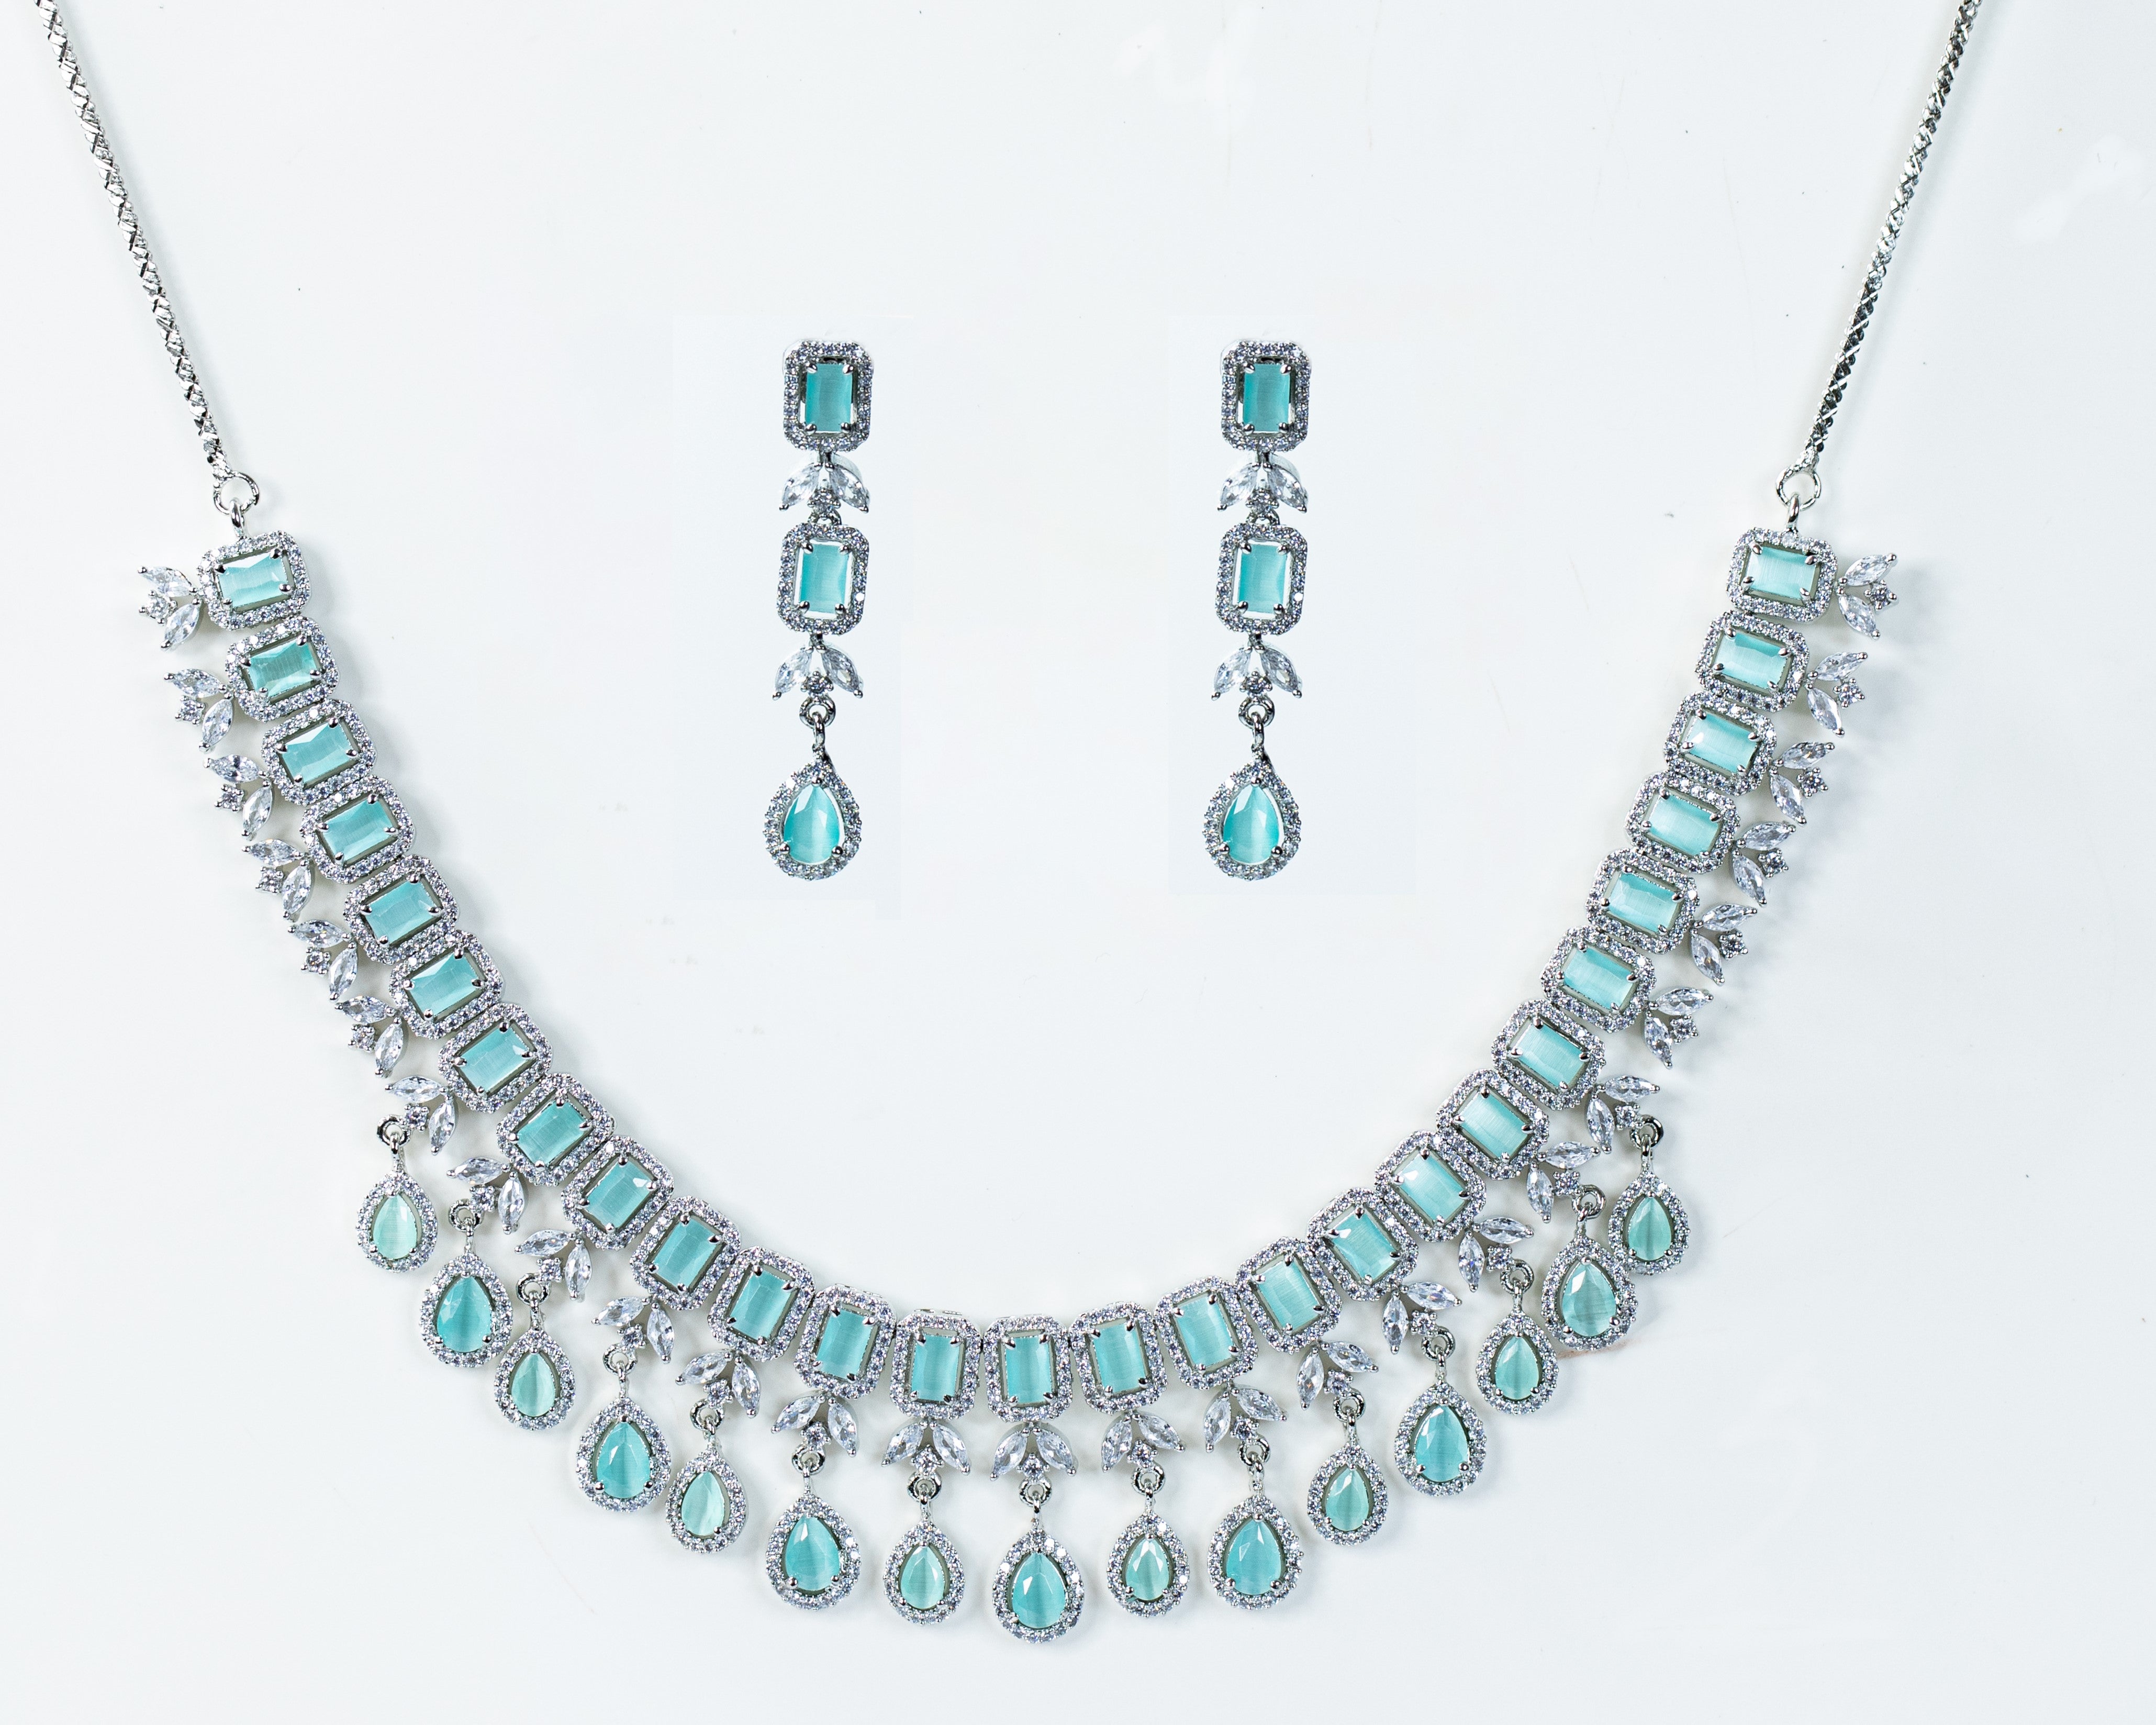 Buy Aquamarine Pendant, 18k Gold Aquamarine Necklace, Birthstone Gift Jewelry  Set, AAA Aquamarine Gemstone Pendant, Gold Chain Necklace Online in India -  Etsy